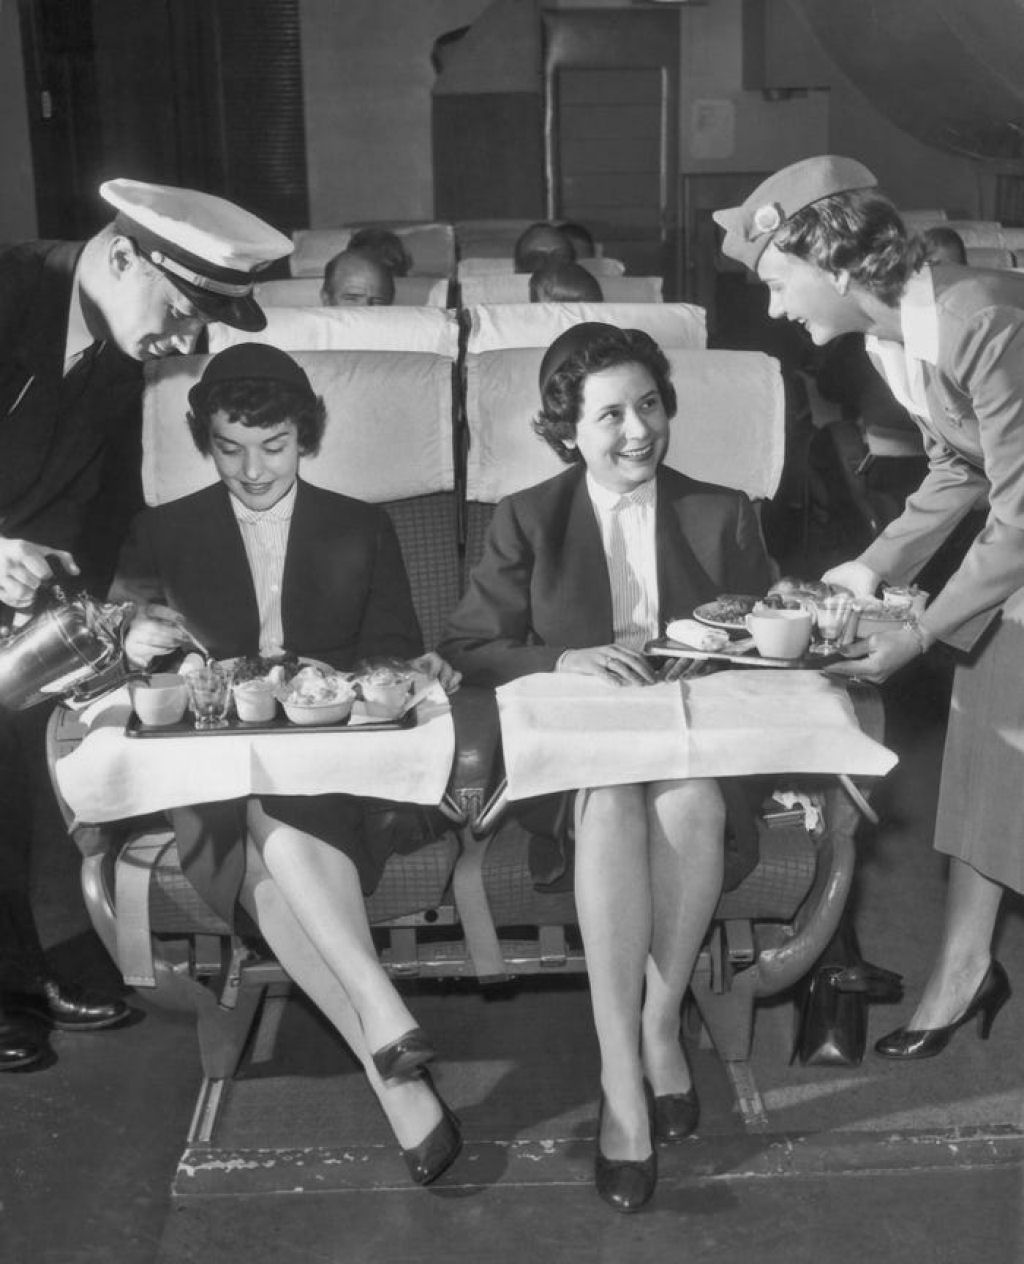 Fotos mostram os dias de glória das viagens aéreas luxuosas antes da Pan Am falir